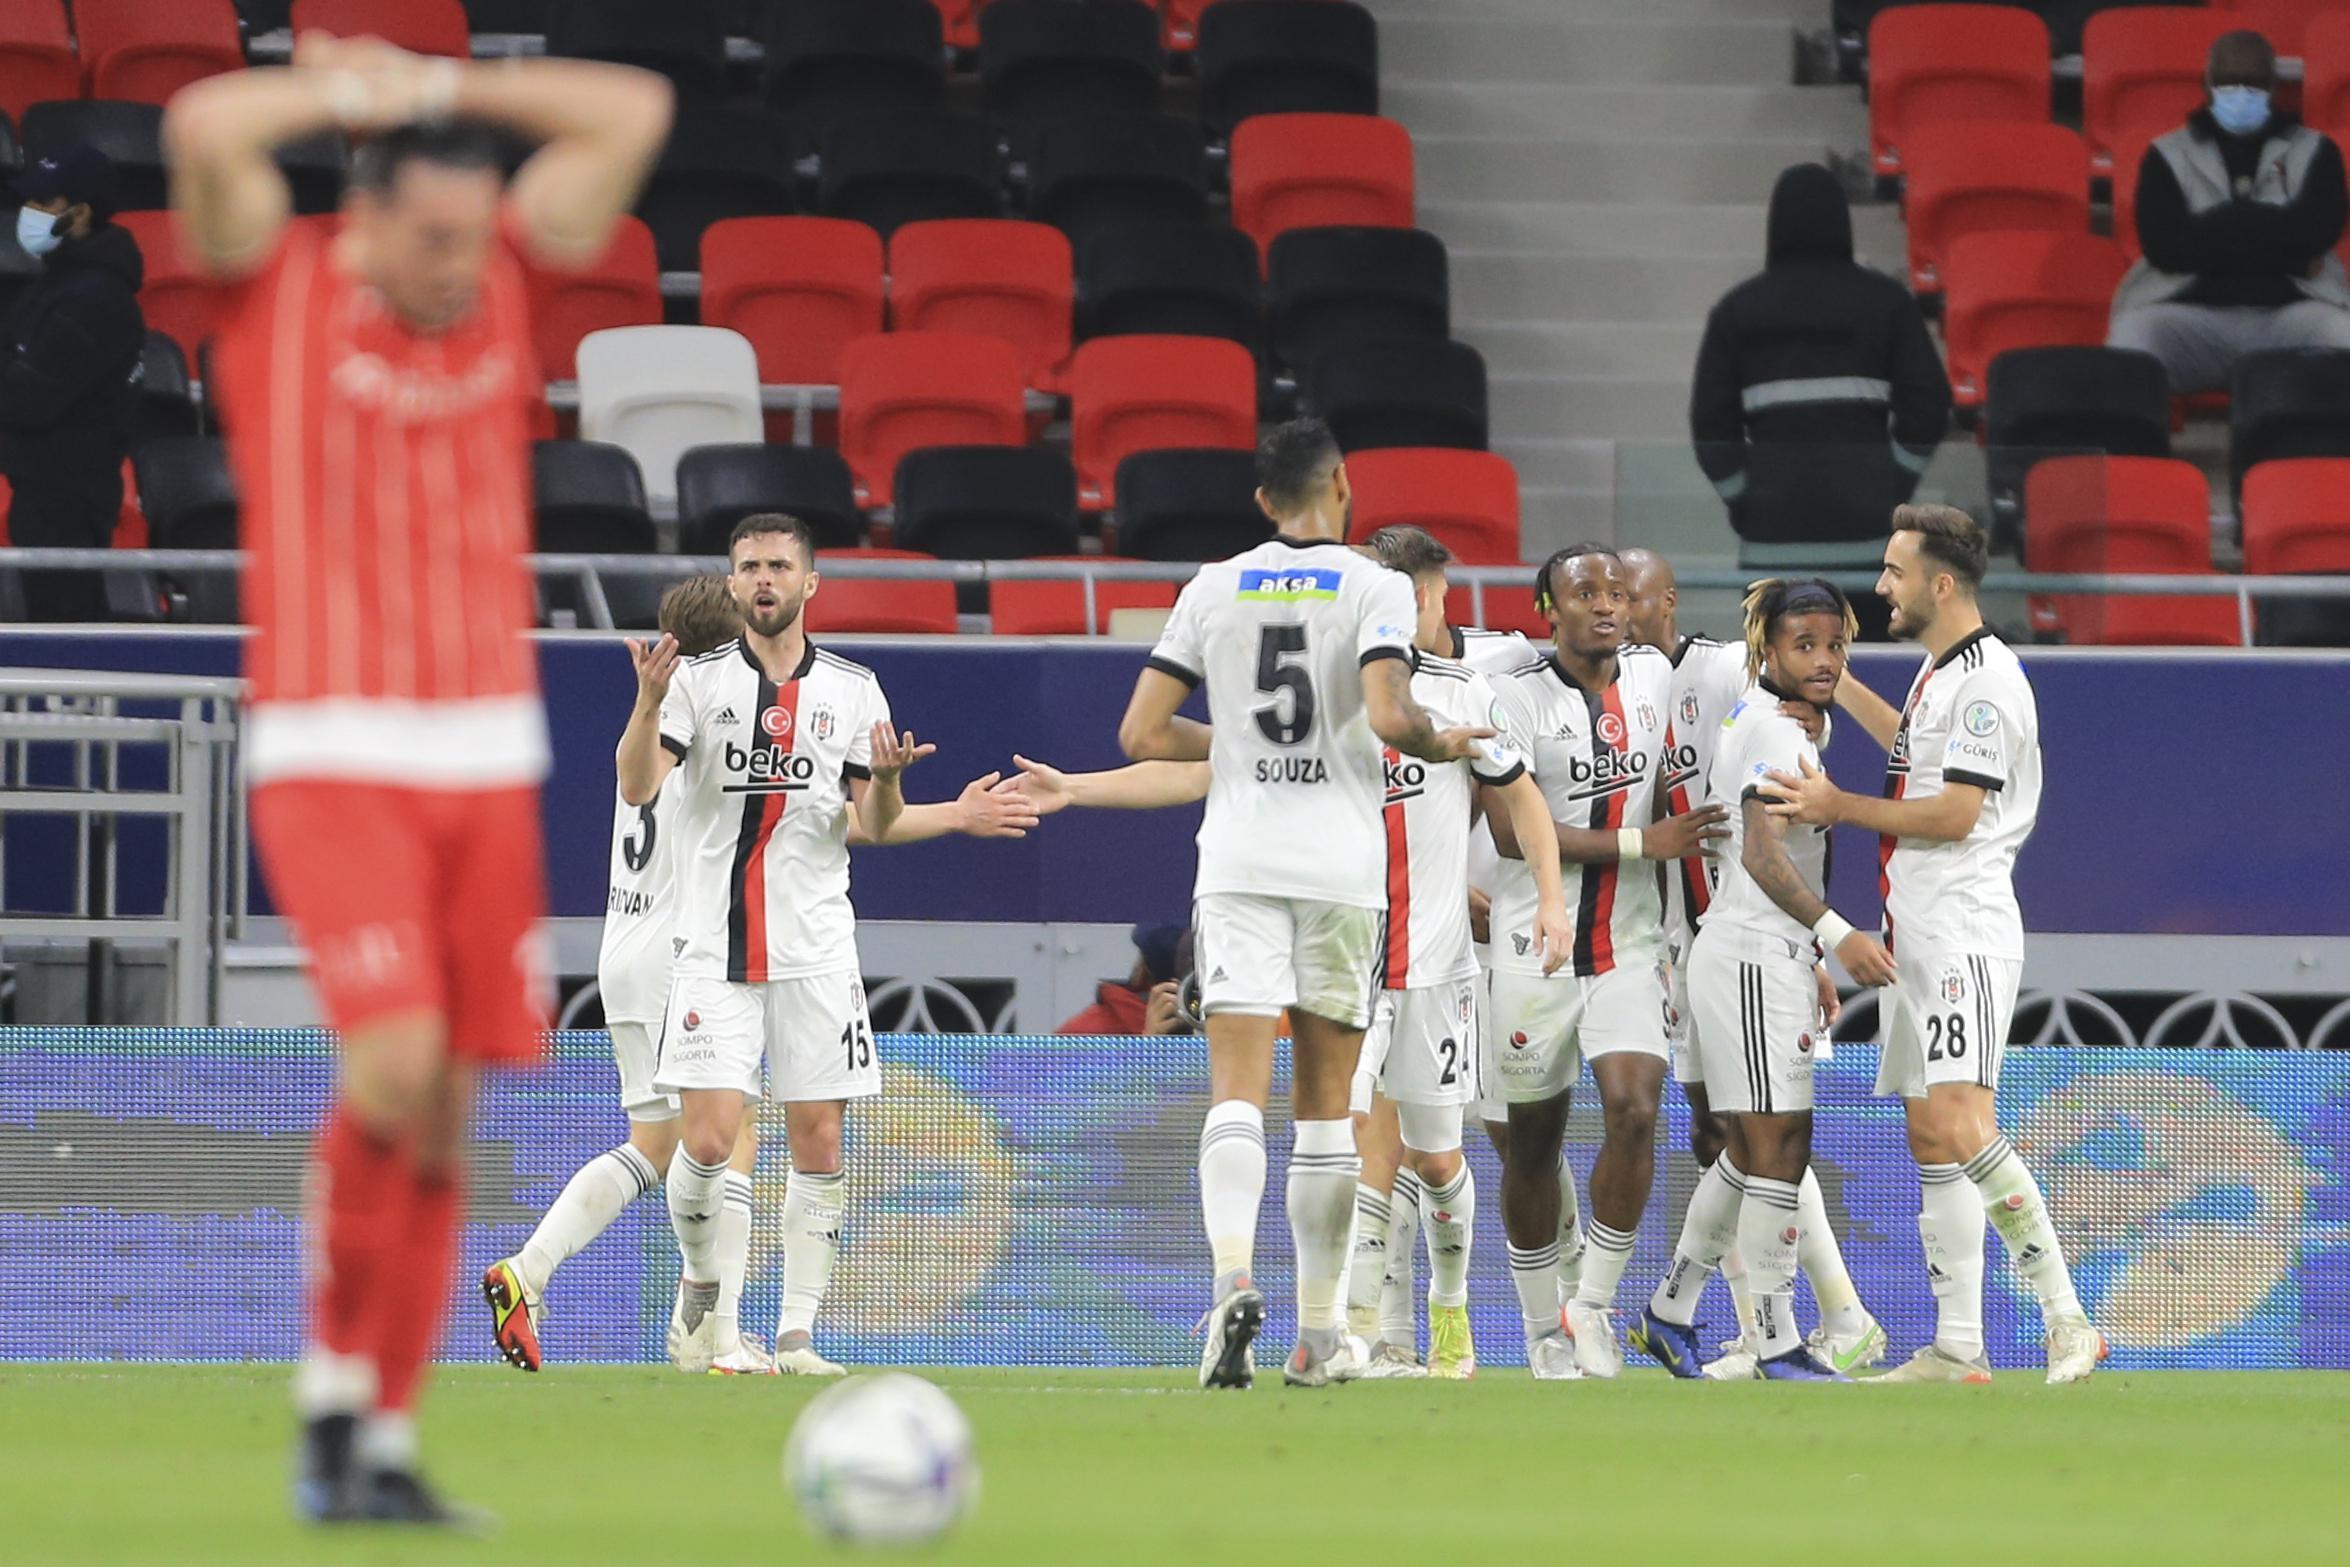 Süper Kupa Beşiktaşın (ÖZET) Beşiktaş - Antalyaspor Süper Kupa maç sonucu: 1-1 (Penaltılar: 4-2)